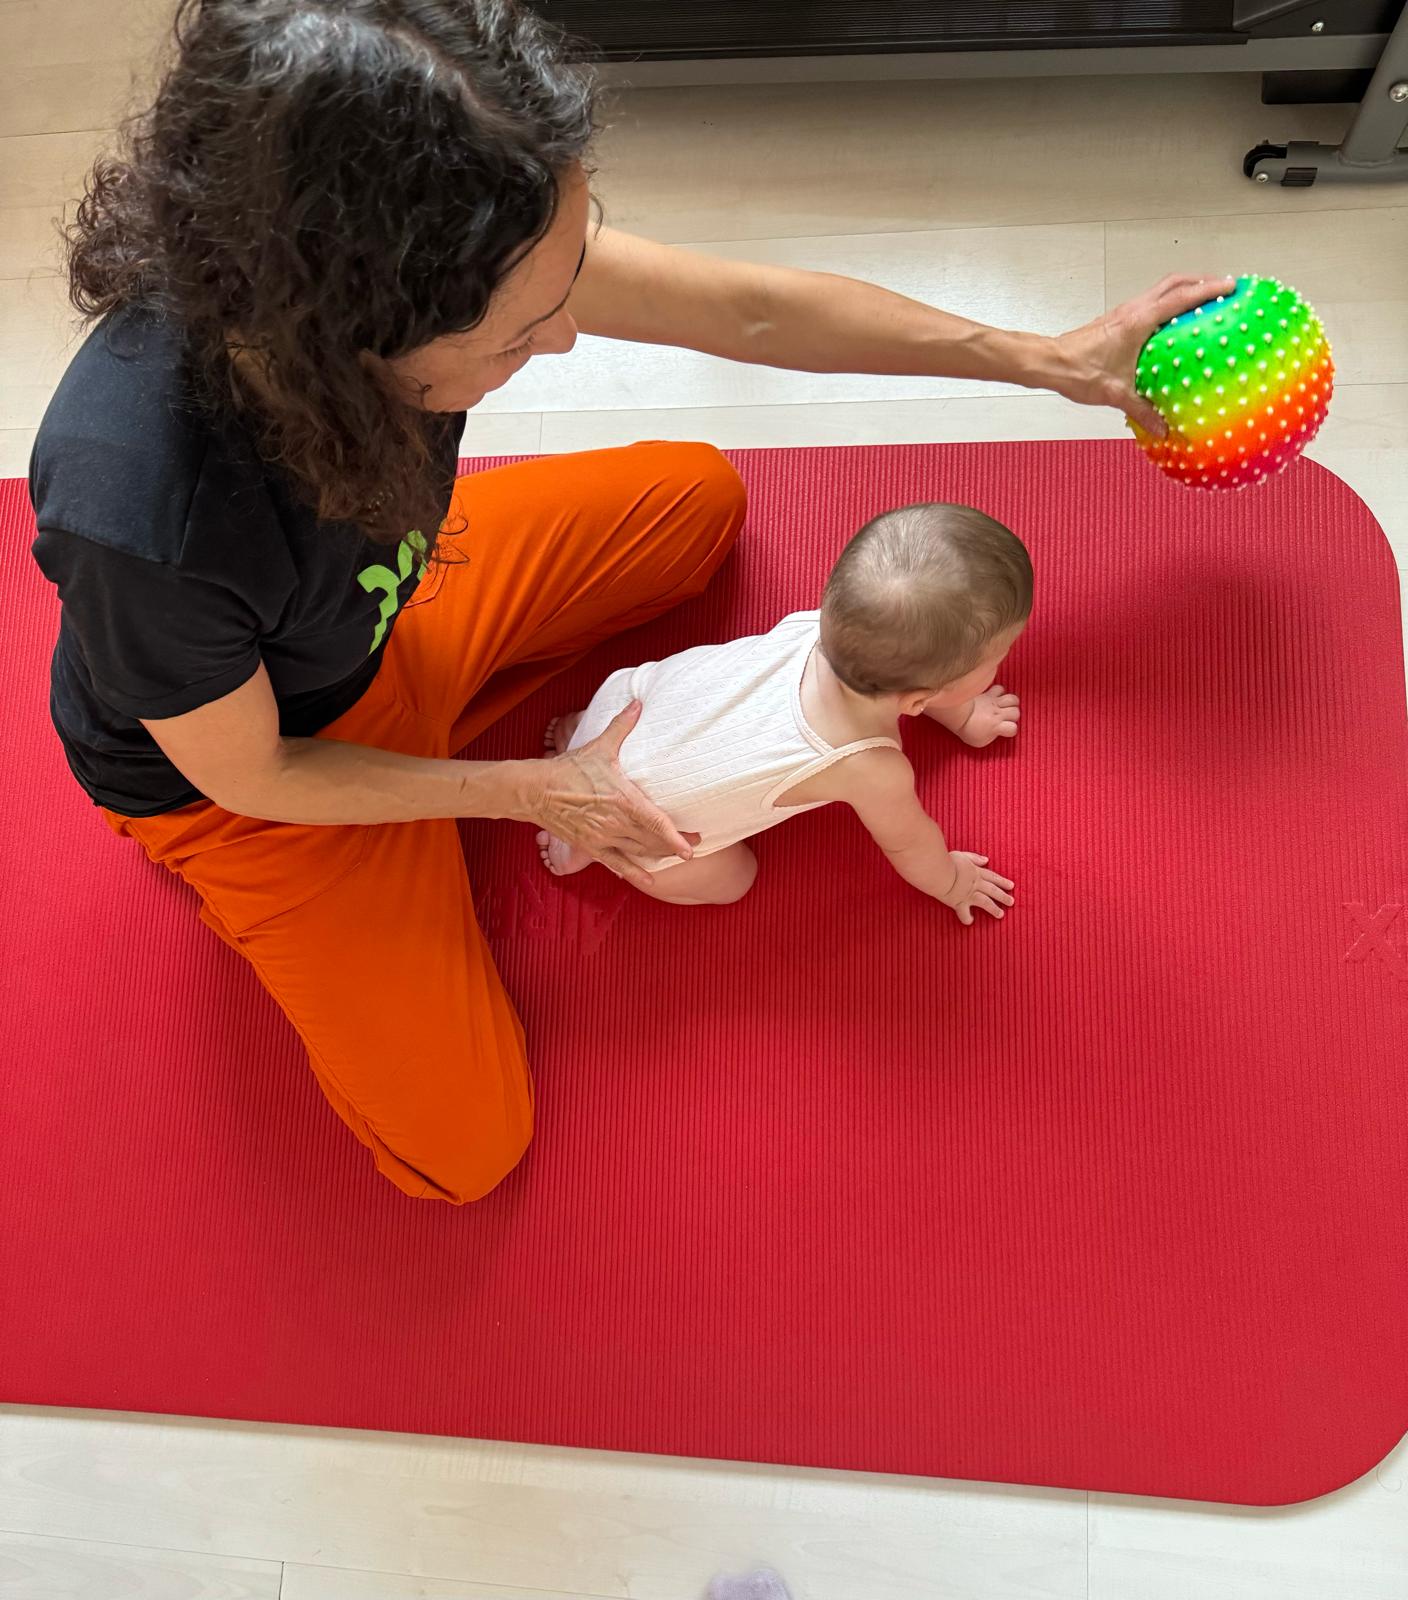 Adulto interactuando con un bebé en una colchoneta de ejercicios roja, ofreciéndole una pelota de colores.